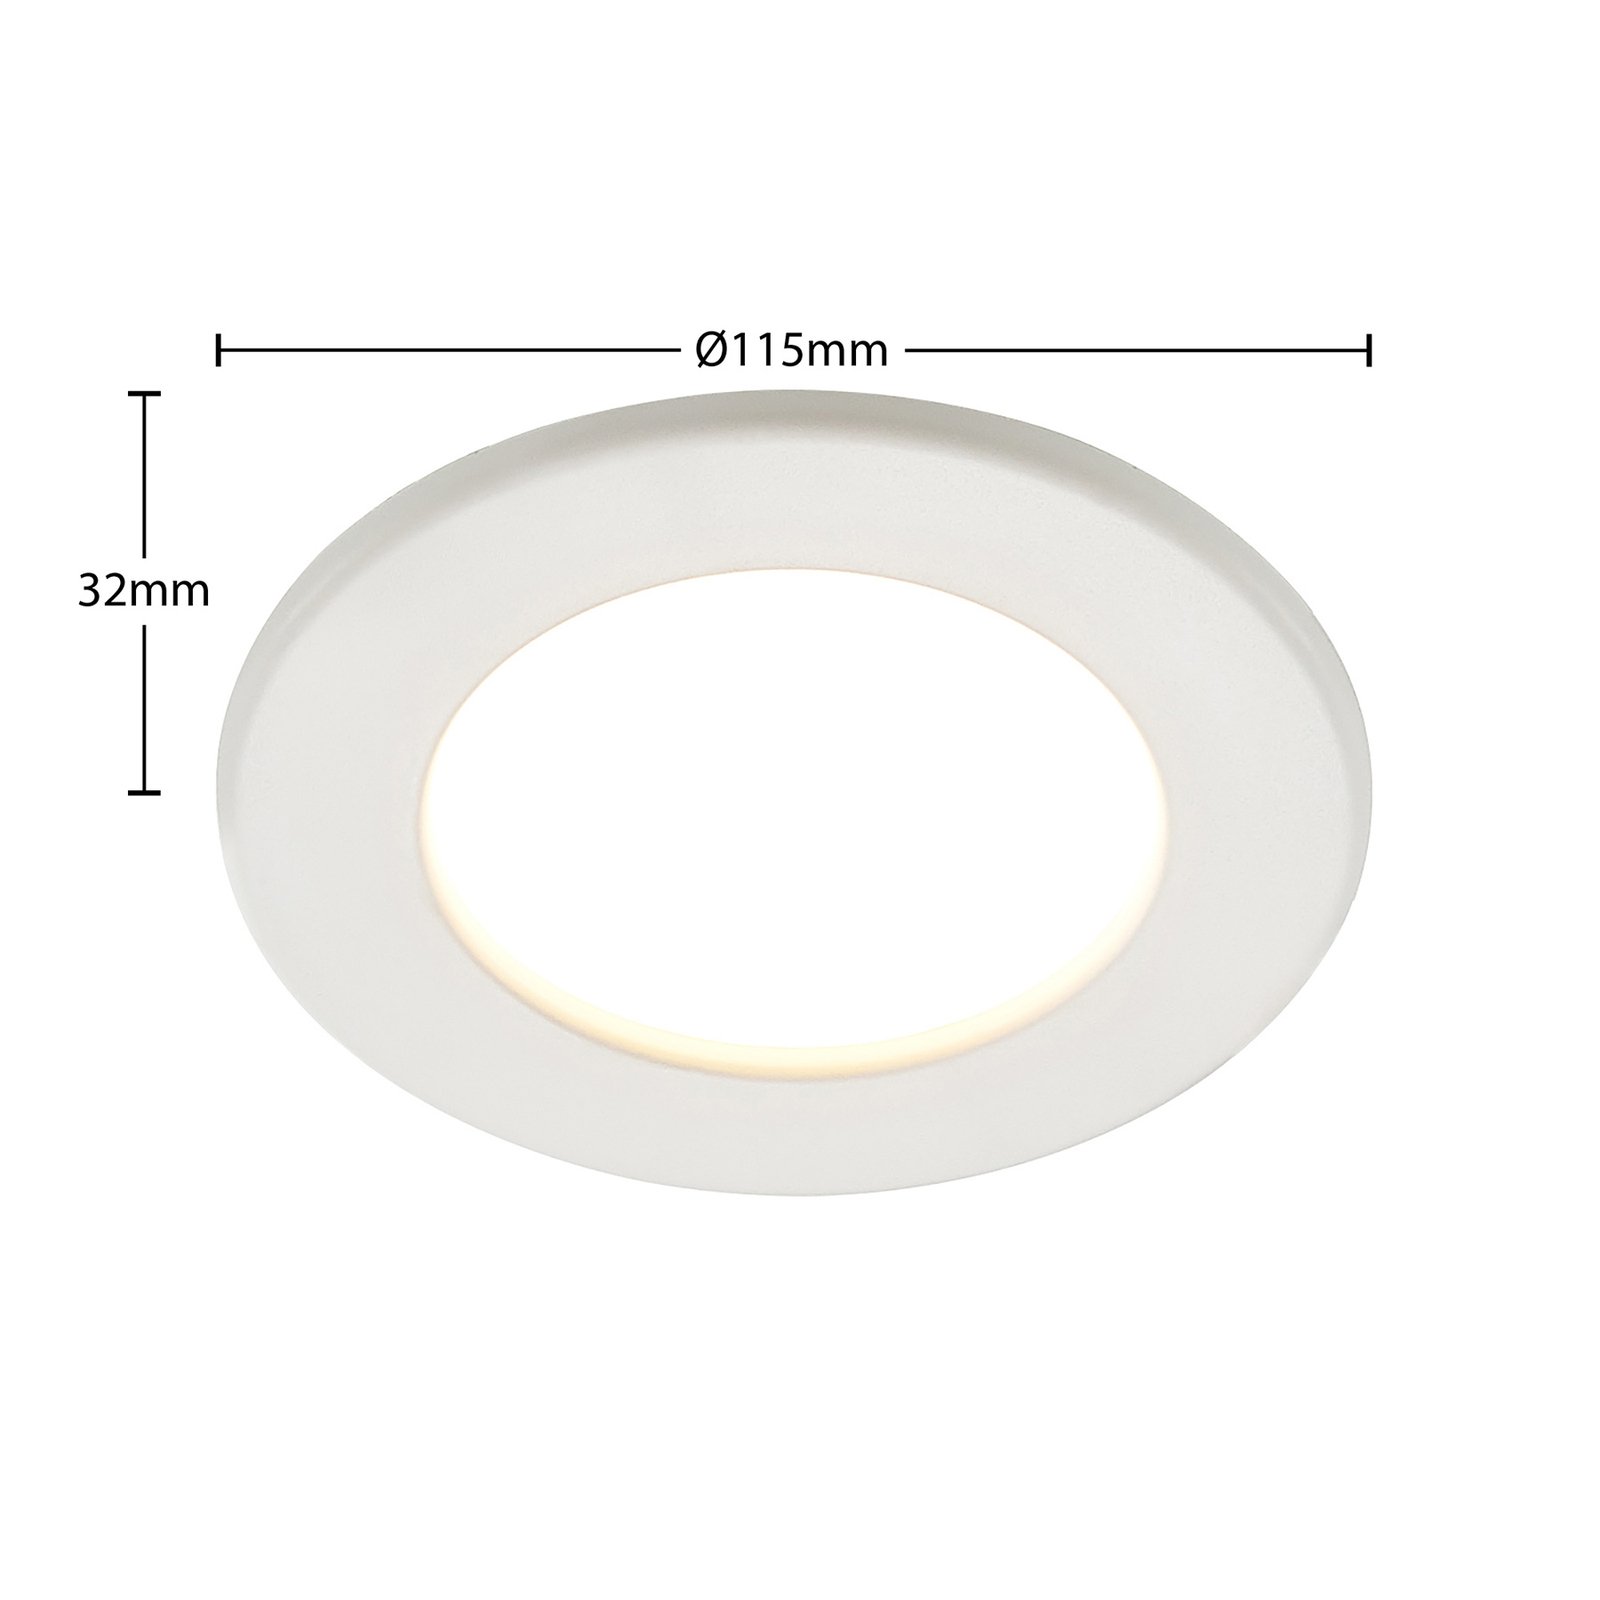 Prios Cadance LED-Einbaulampe weiß 11,5cm 3er-Set